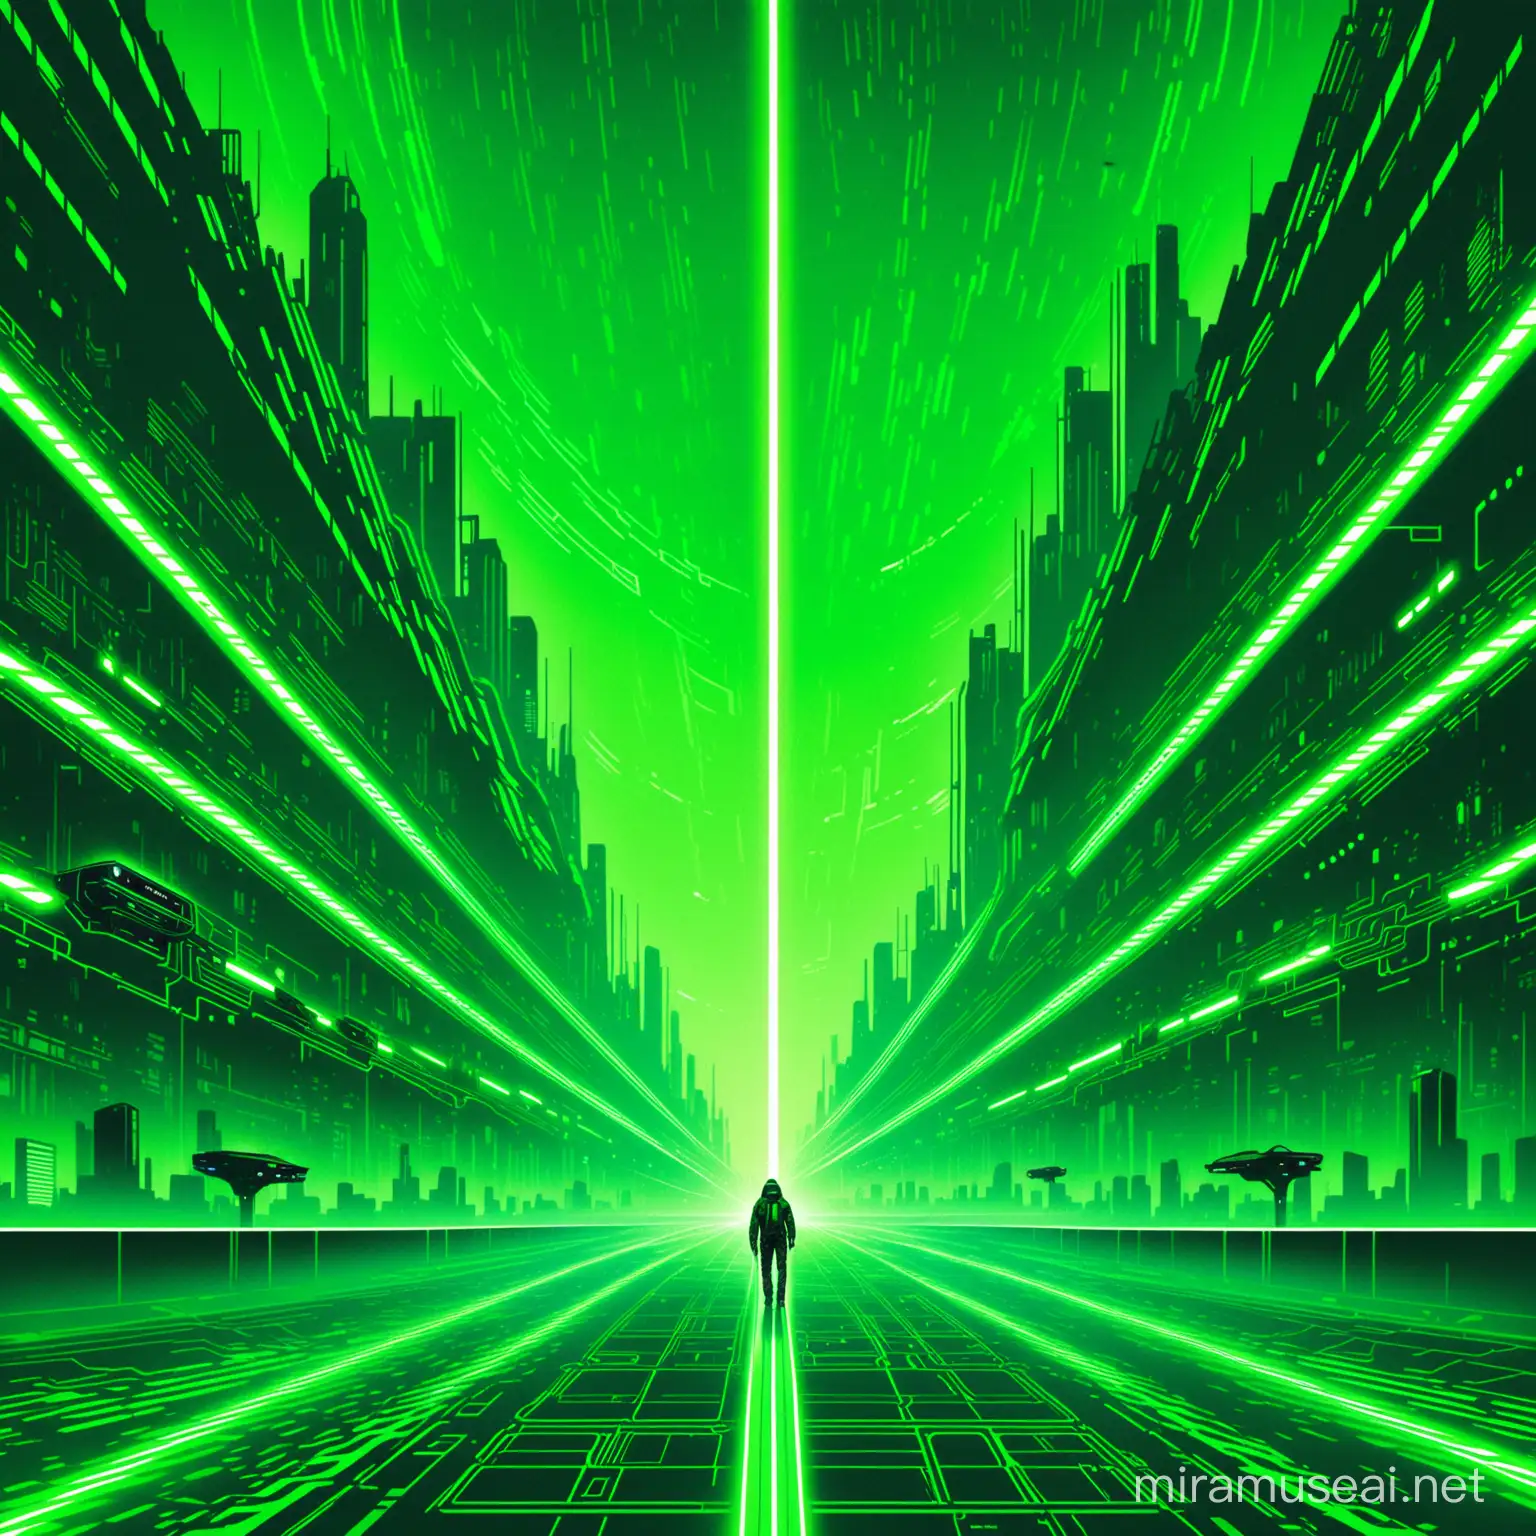 green cyberpunk album cover futuristic
 
